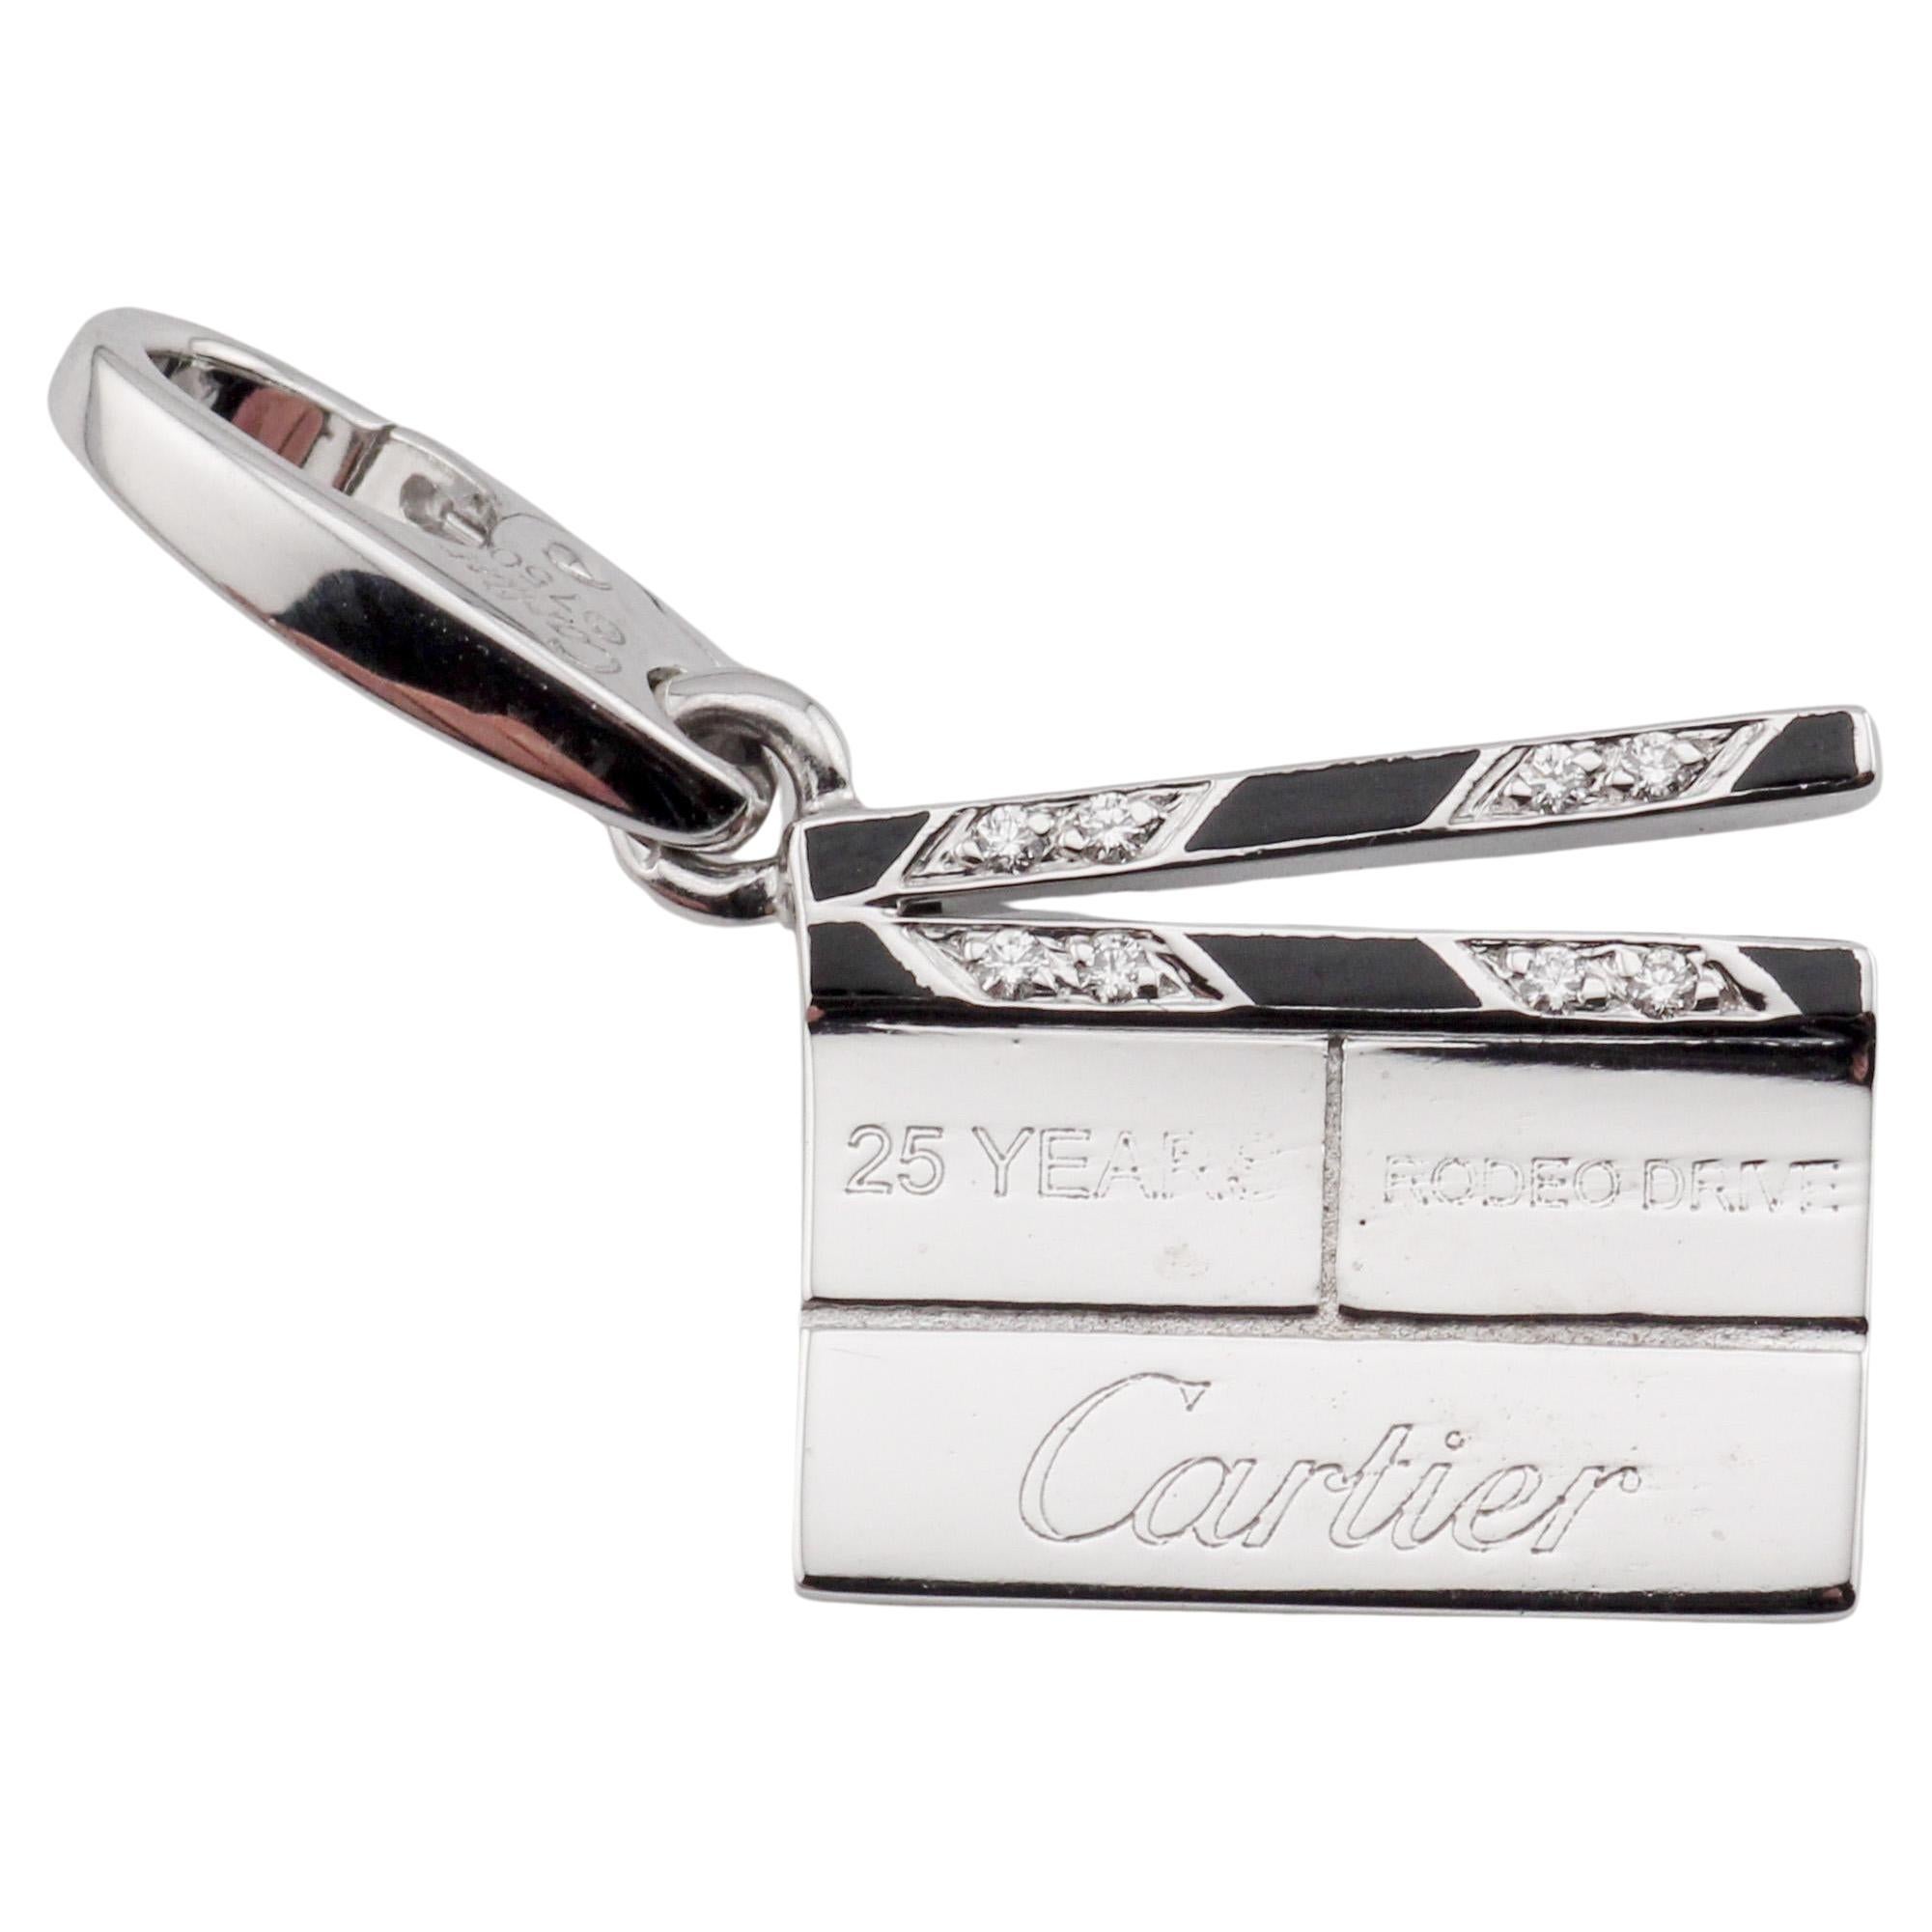 Cartier Pendentif breloque Clapperboard en or blanc 18 carats, émaillé et diamants, édition limitée